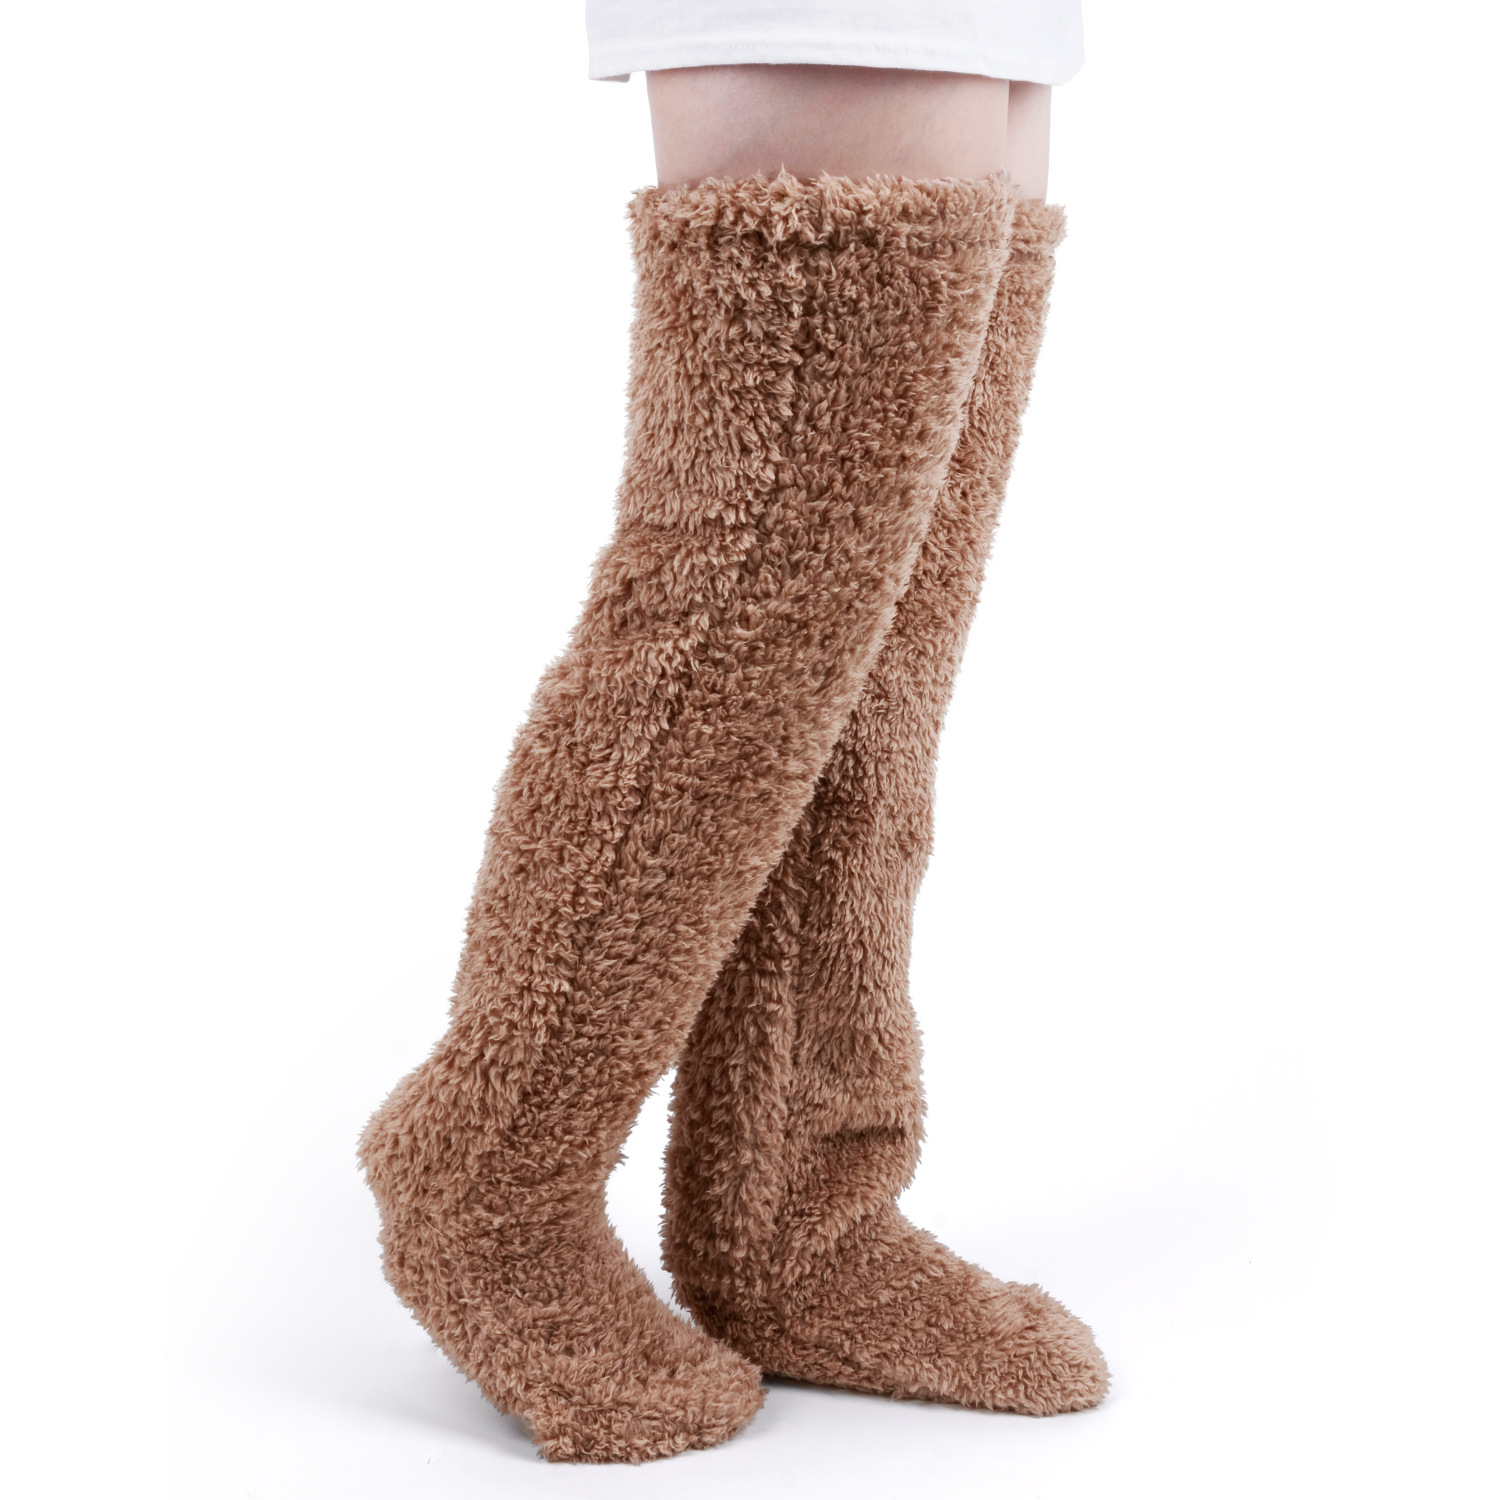 ManMaidde Thigh High Socks / Over Knee Fuzzy Socks / Boot Socks / Legging Stocking / Plush Leg Warmers for Office. Living Room, for Women &amp; Kids